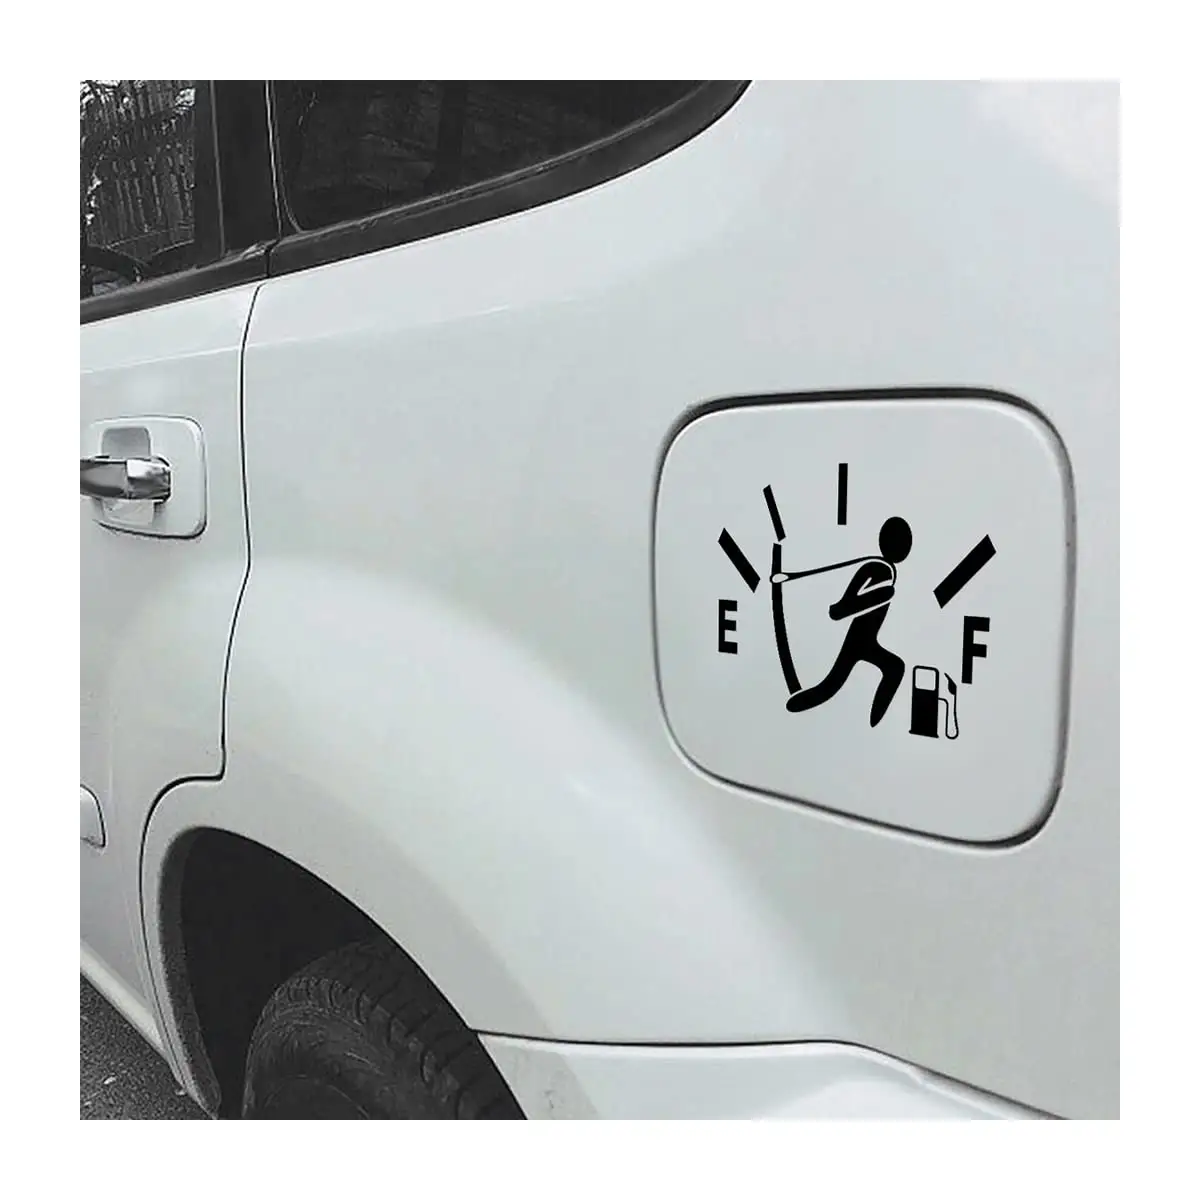 Autocollant adhésif UV imperméable à l'eau logo de marque personnalisé autocollant de voiture de véhicule découpé autocollant de transfert de vinyle extérieur